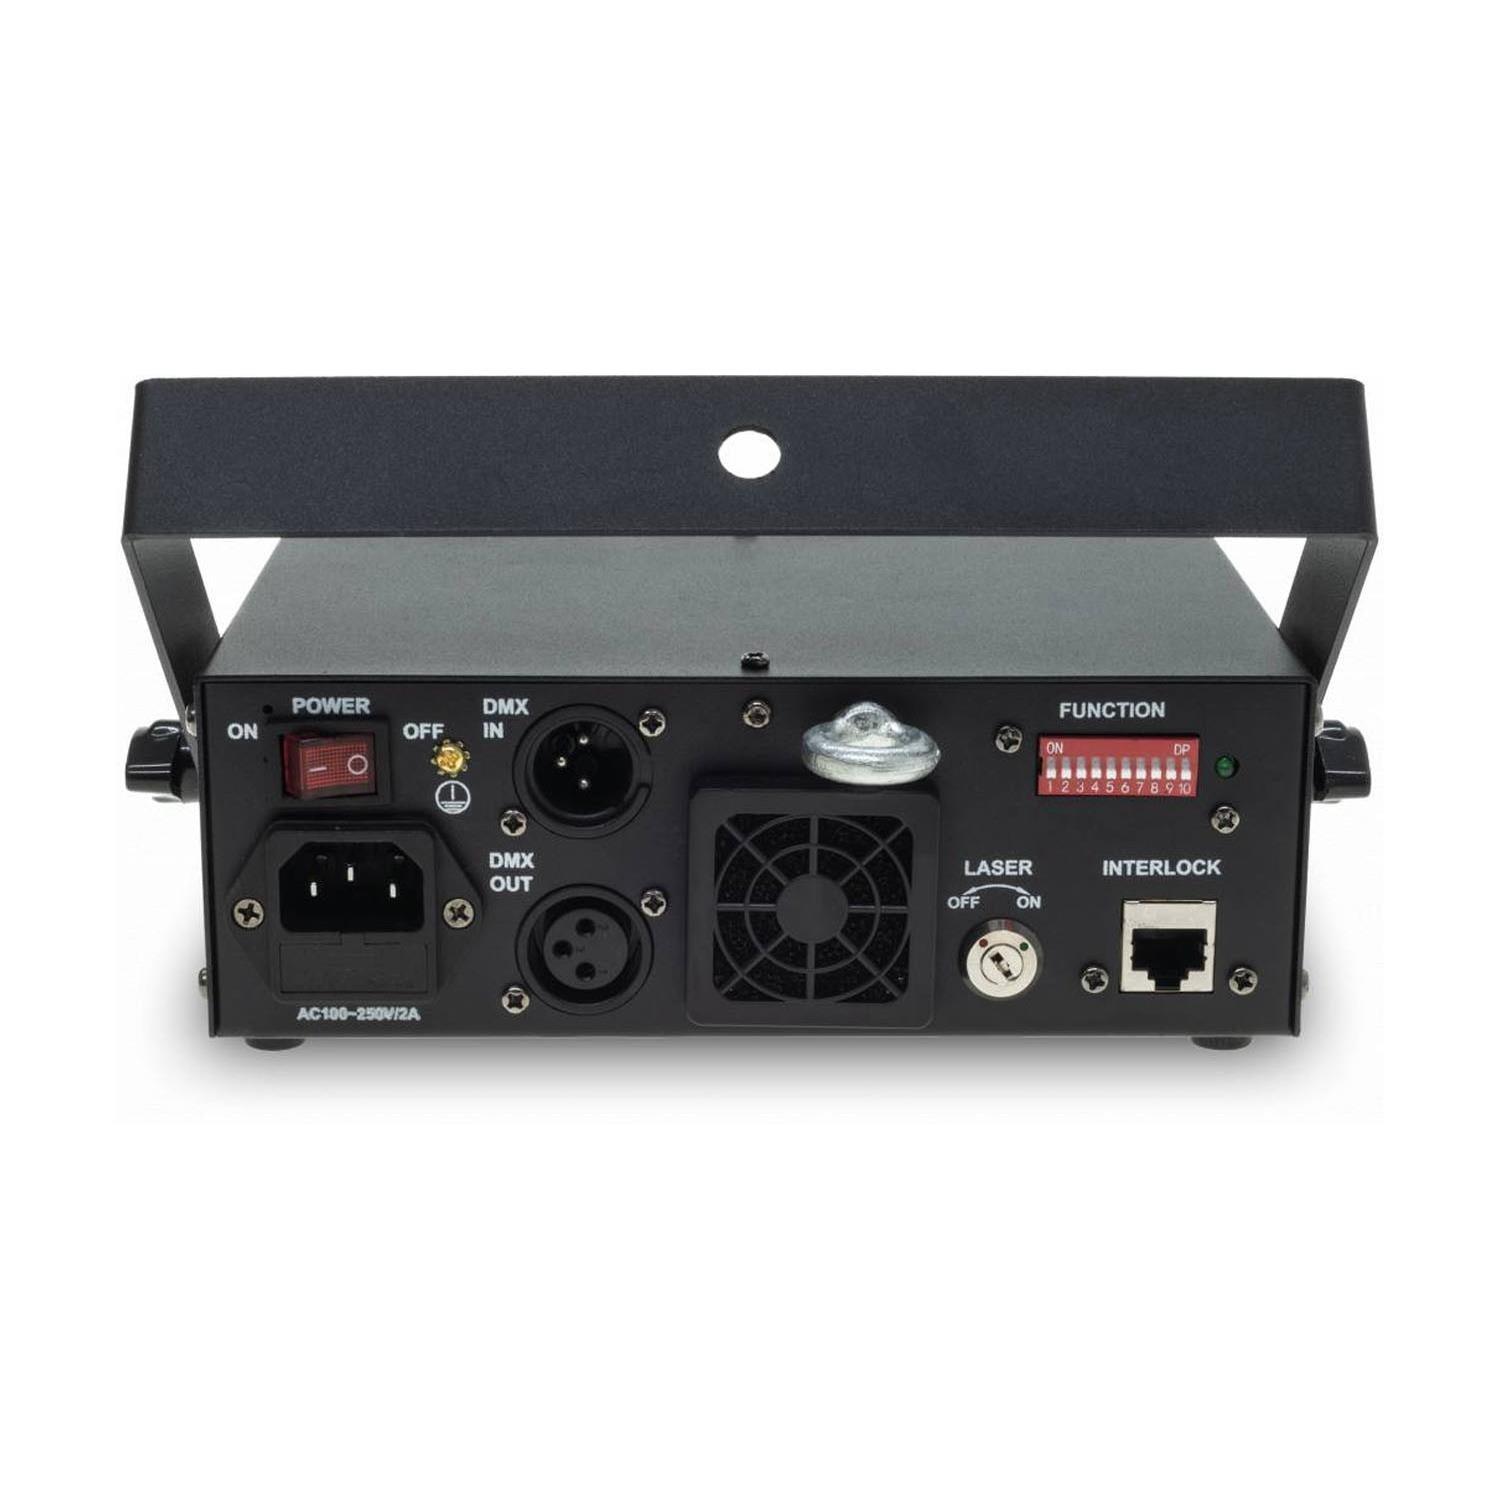 Laserworld EL-230RGB MK2 230mw RGB DMX Laser - DY Pro Audio